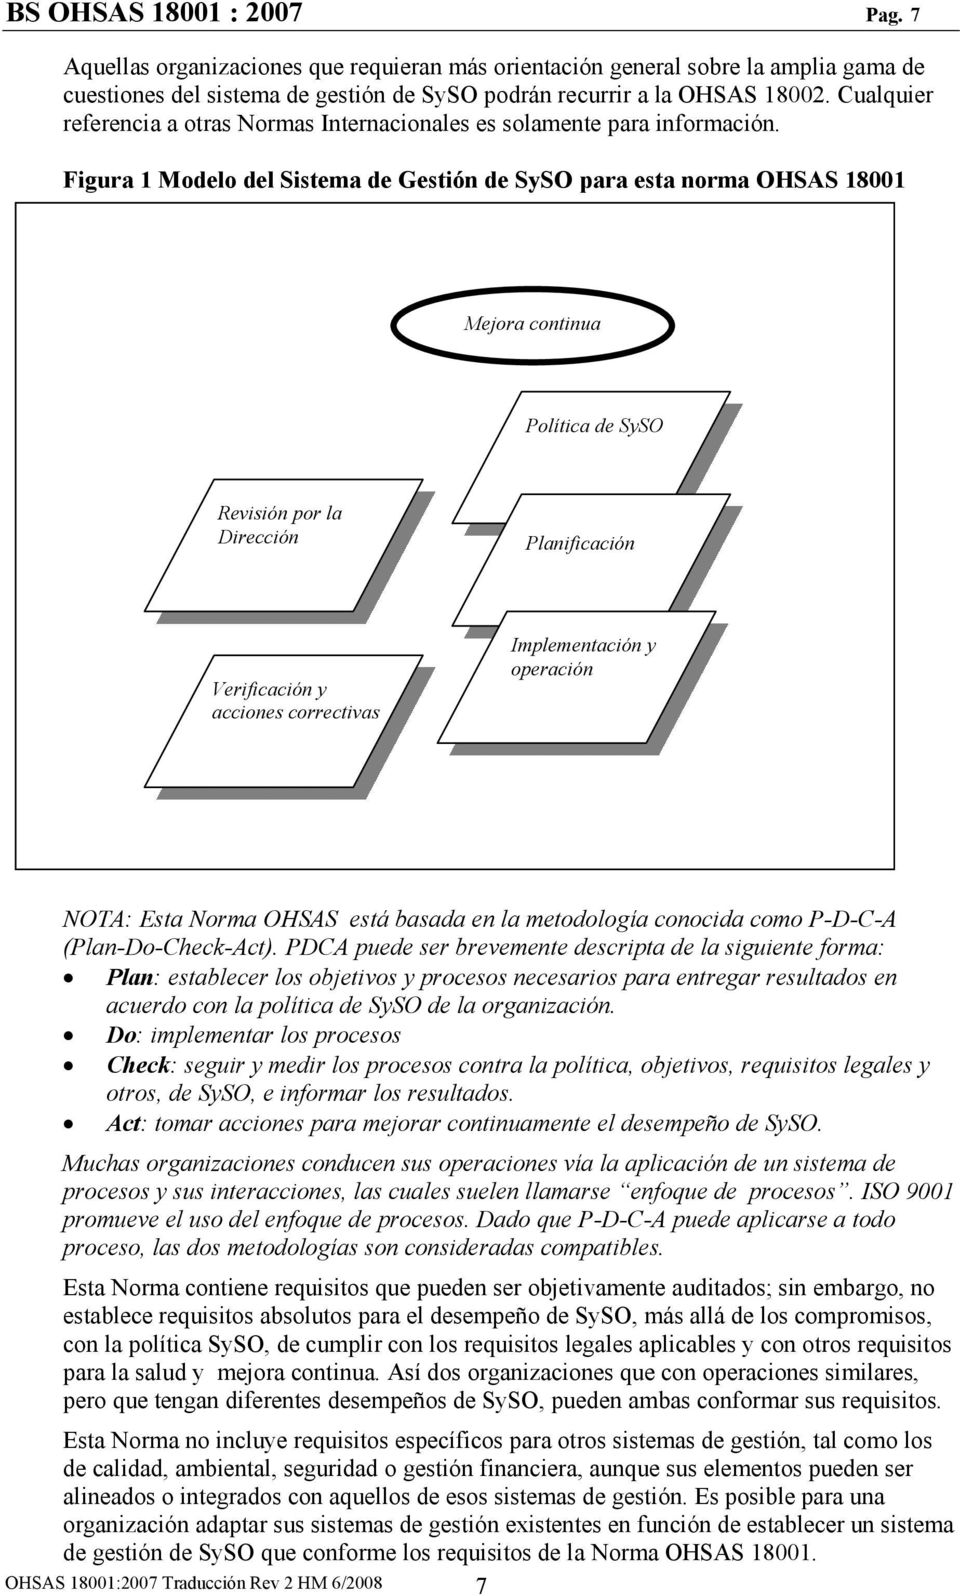 Figura 1 Modelo del Sistema de Gestión de SySO para esta norma OHSAS 18001 Mejora continua Política de SySO Revisión por la Dirección Planificación Verificación y acciones correctivas Implementación